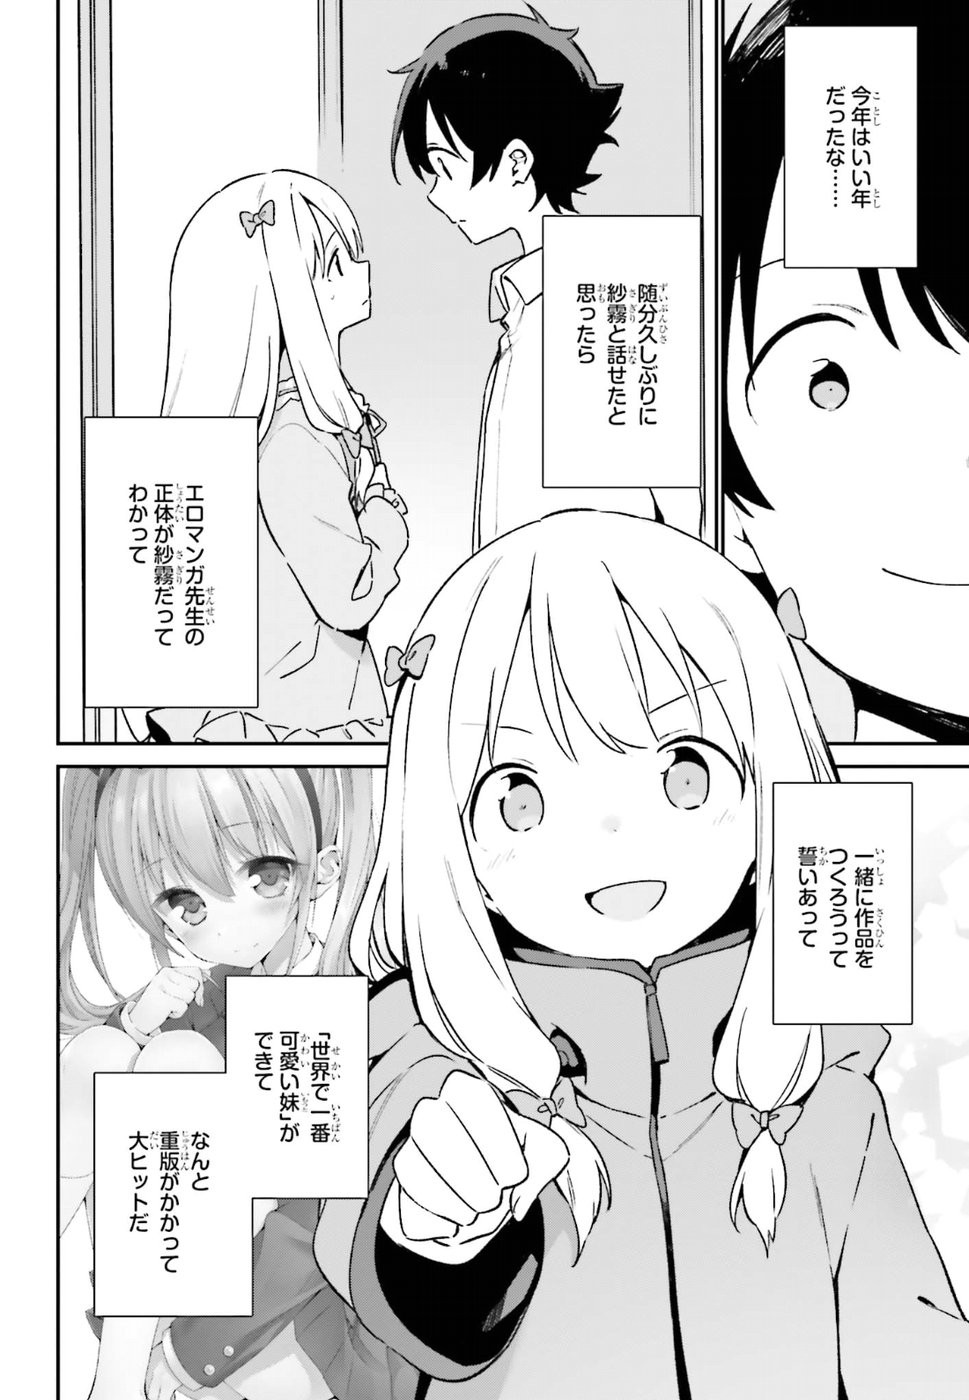 Ero Manga Sensei - Chapter 51 - Page 2